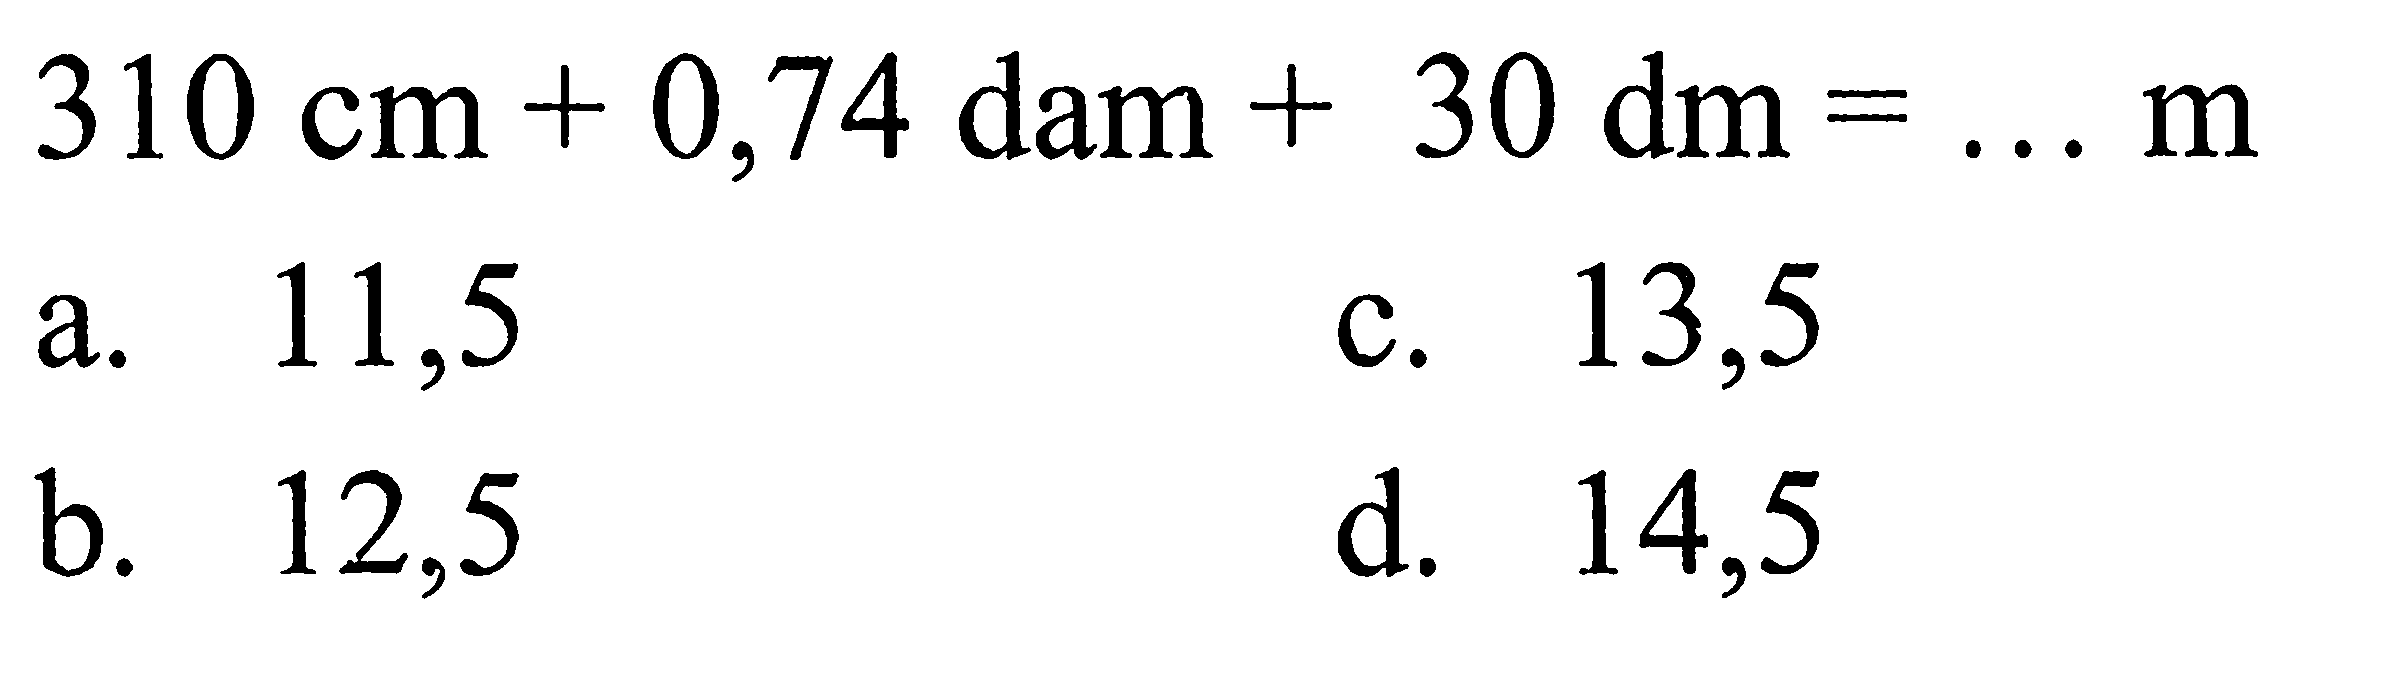 311 cm + 0,74 dam + 30 dm = ... m